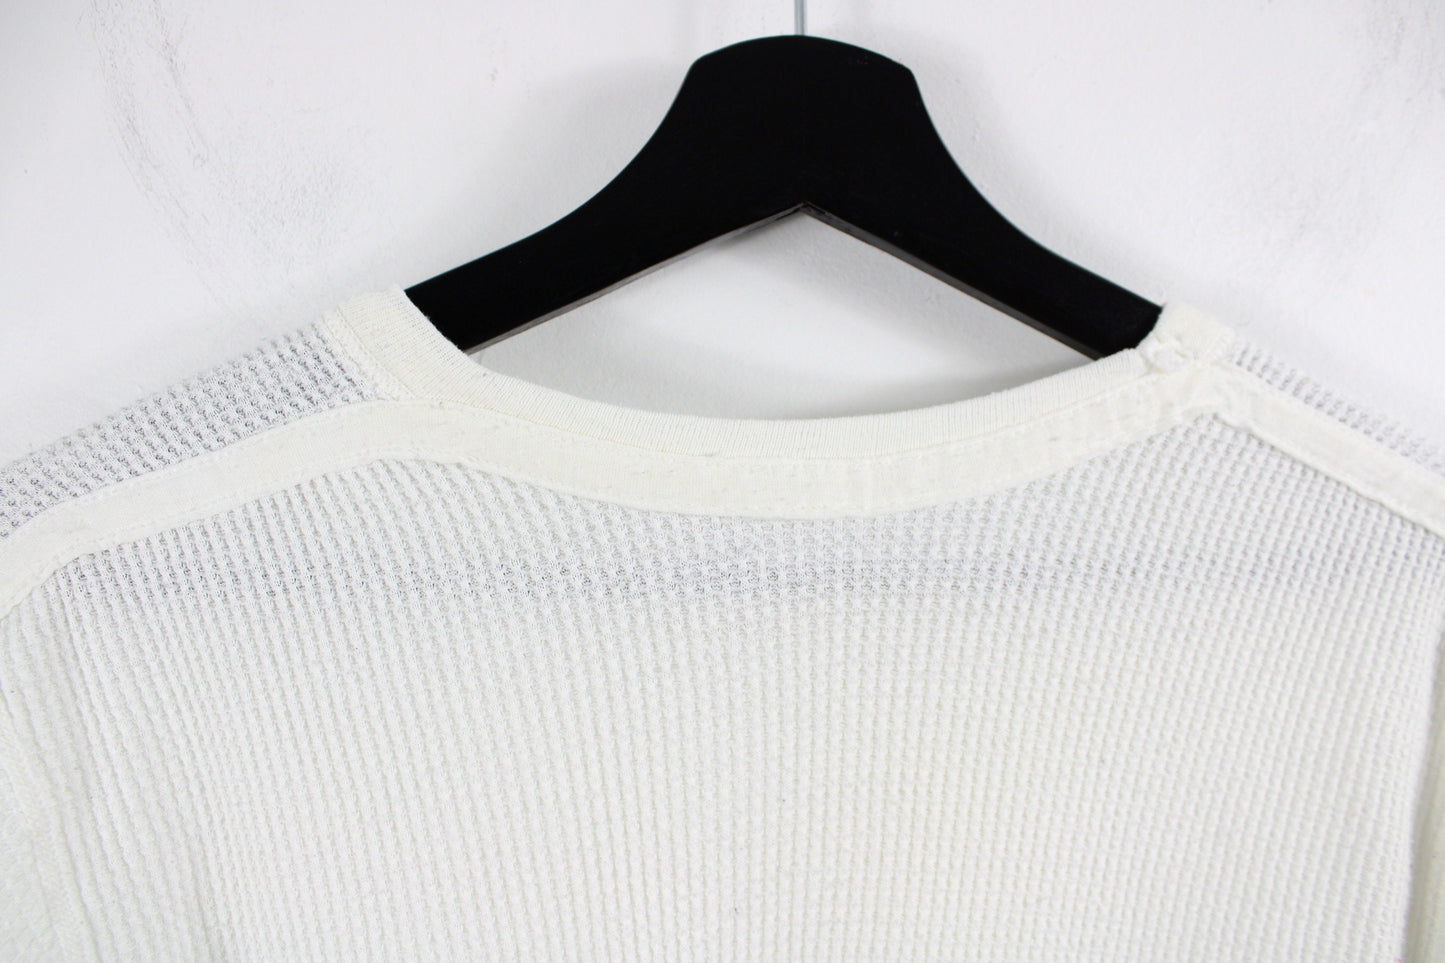 Short-Sleeve Under-Shirt / Vintage Waffle Texture Utility Workwear T-Shirt / 90s Clothing